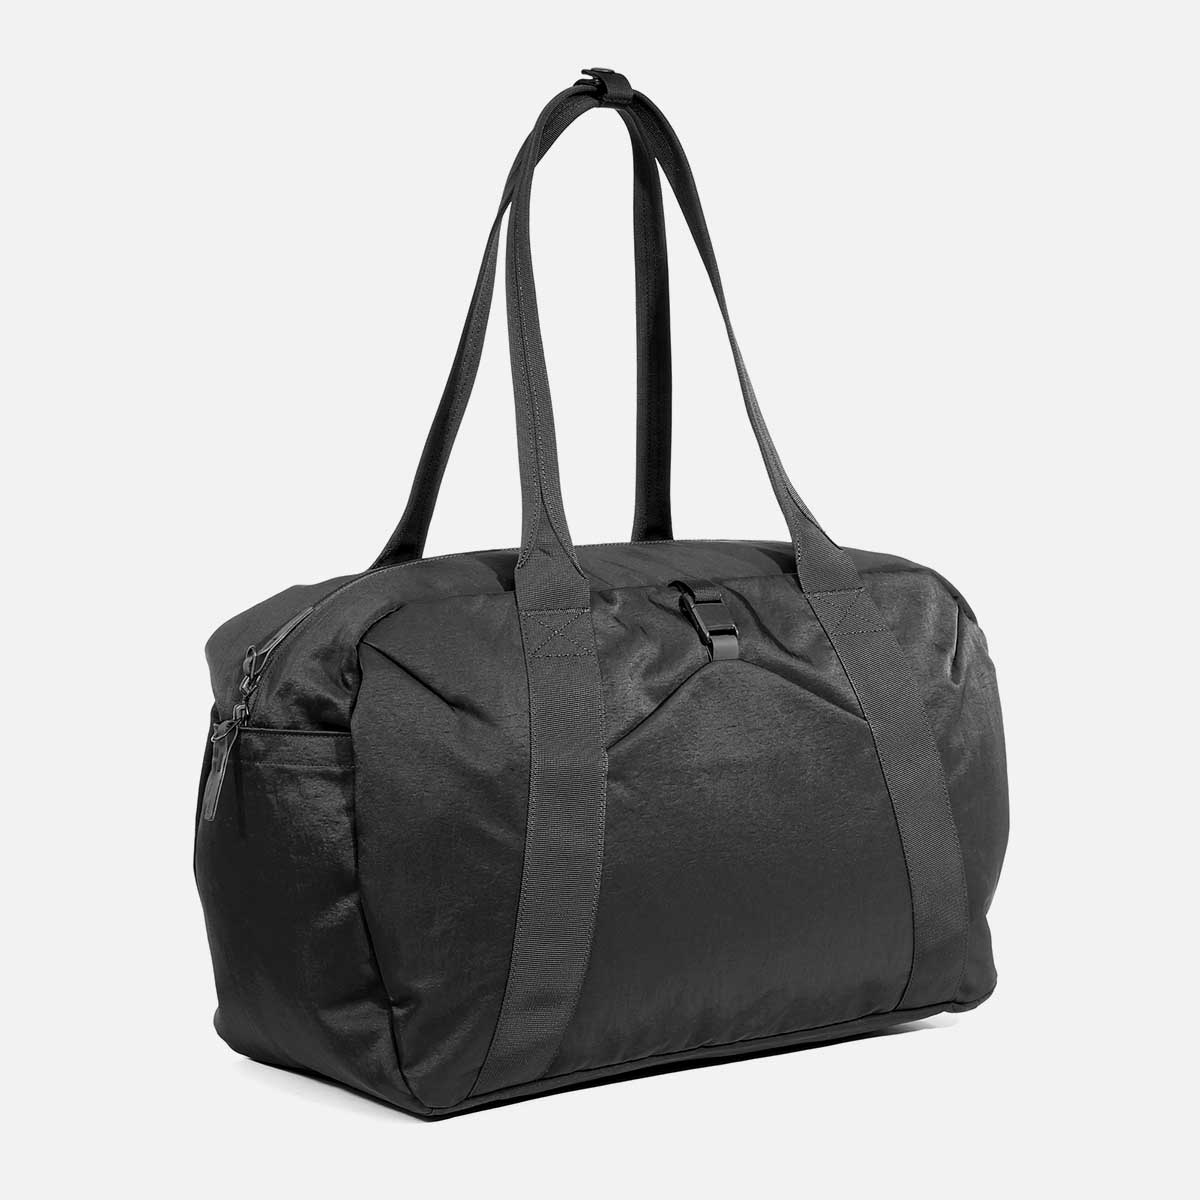 YoKelly Sports Duffel Bag 20 inch for Travel Gym Black India | Ubuy